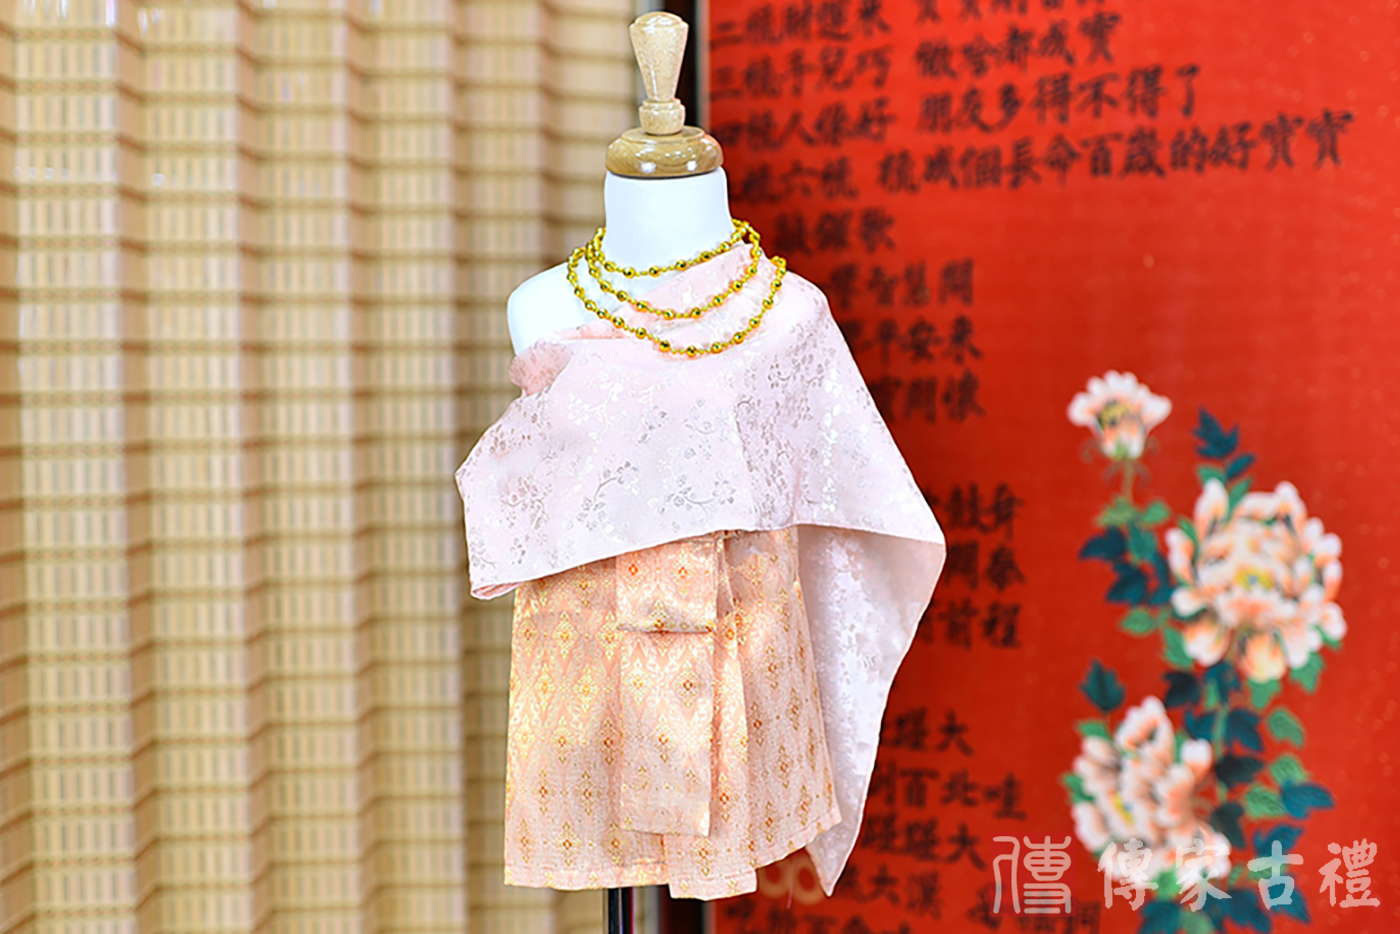 2024-02-23小孩皇室泰服古裝禮服。淺粉色的紋路綢緞上衣搭配橘色泰國圖案裙裝的泰式古裝禮服。照片集